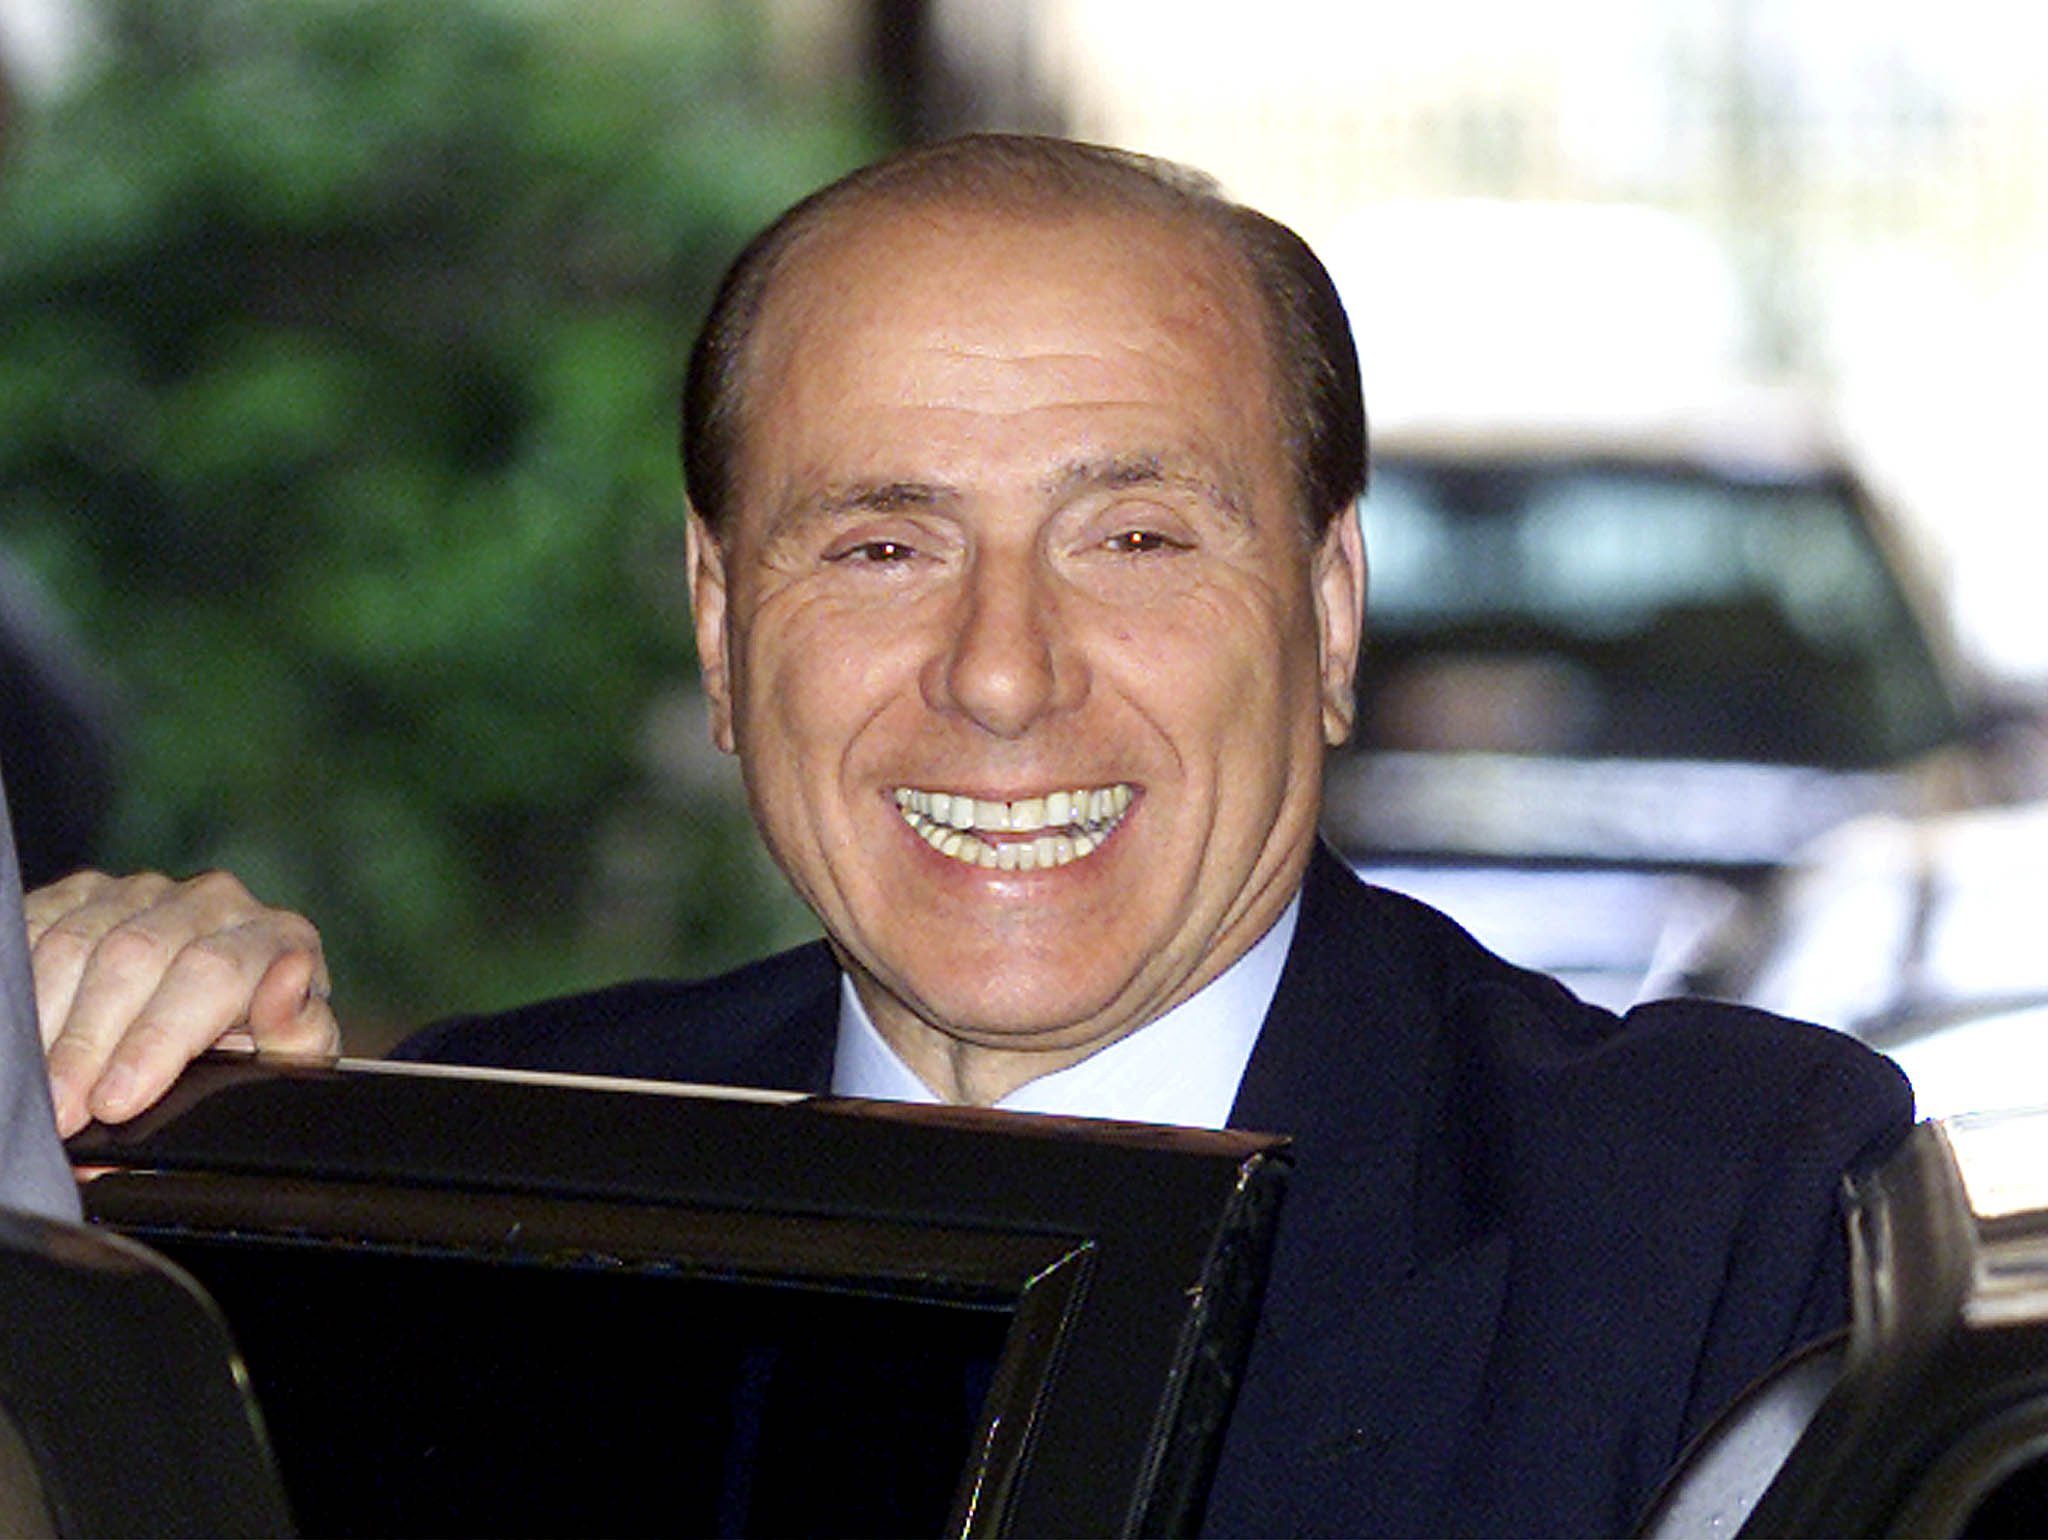 De karakteristieke glimlach waar Berlusconi zijn hele carrière lang mensen mee probeerde te verleiden. EPA/DANILO SCHIAVELLA